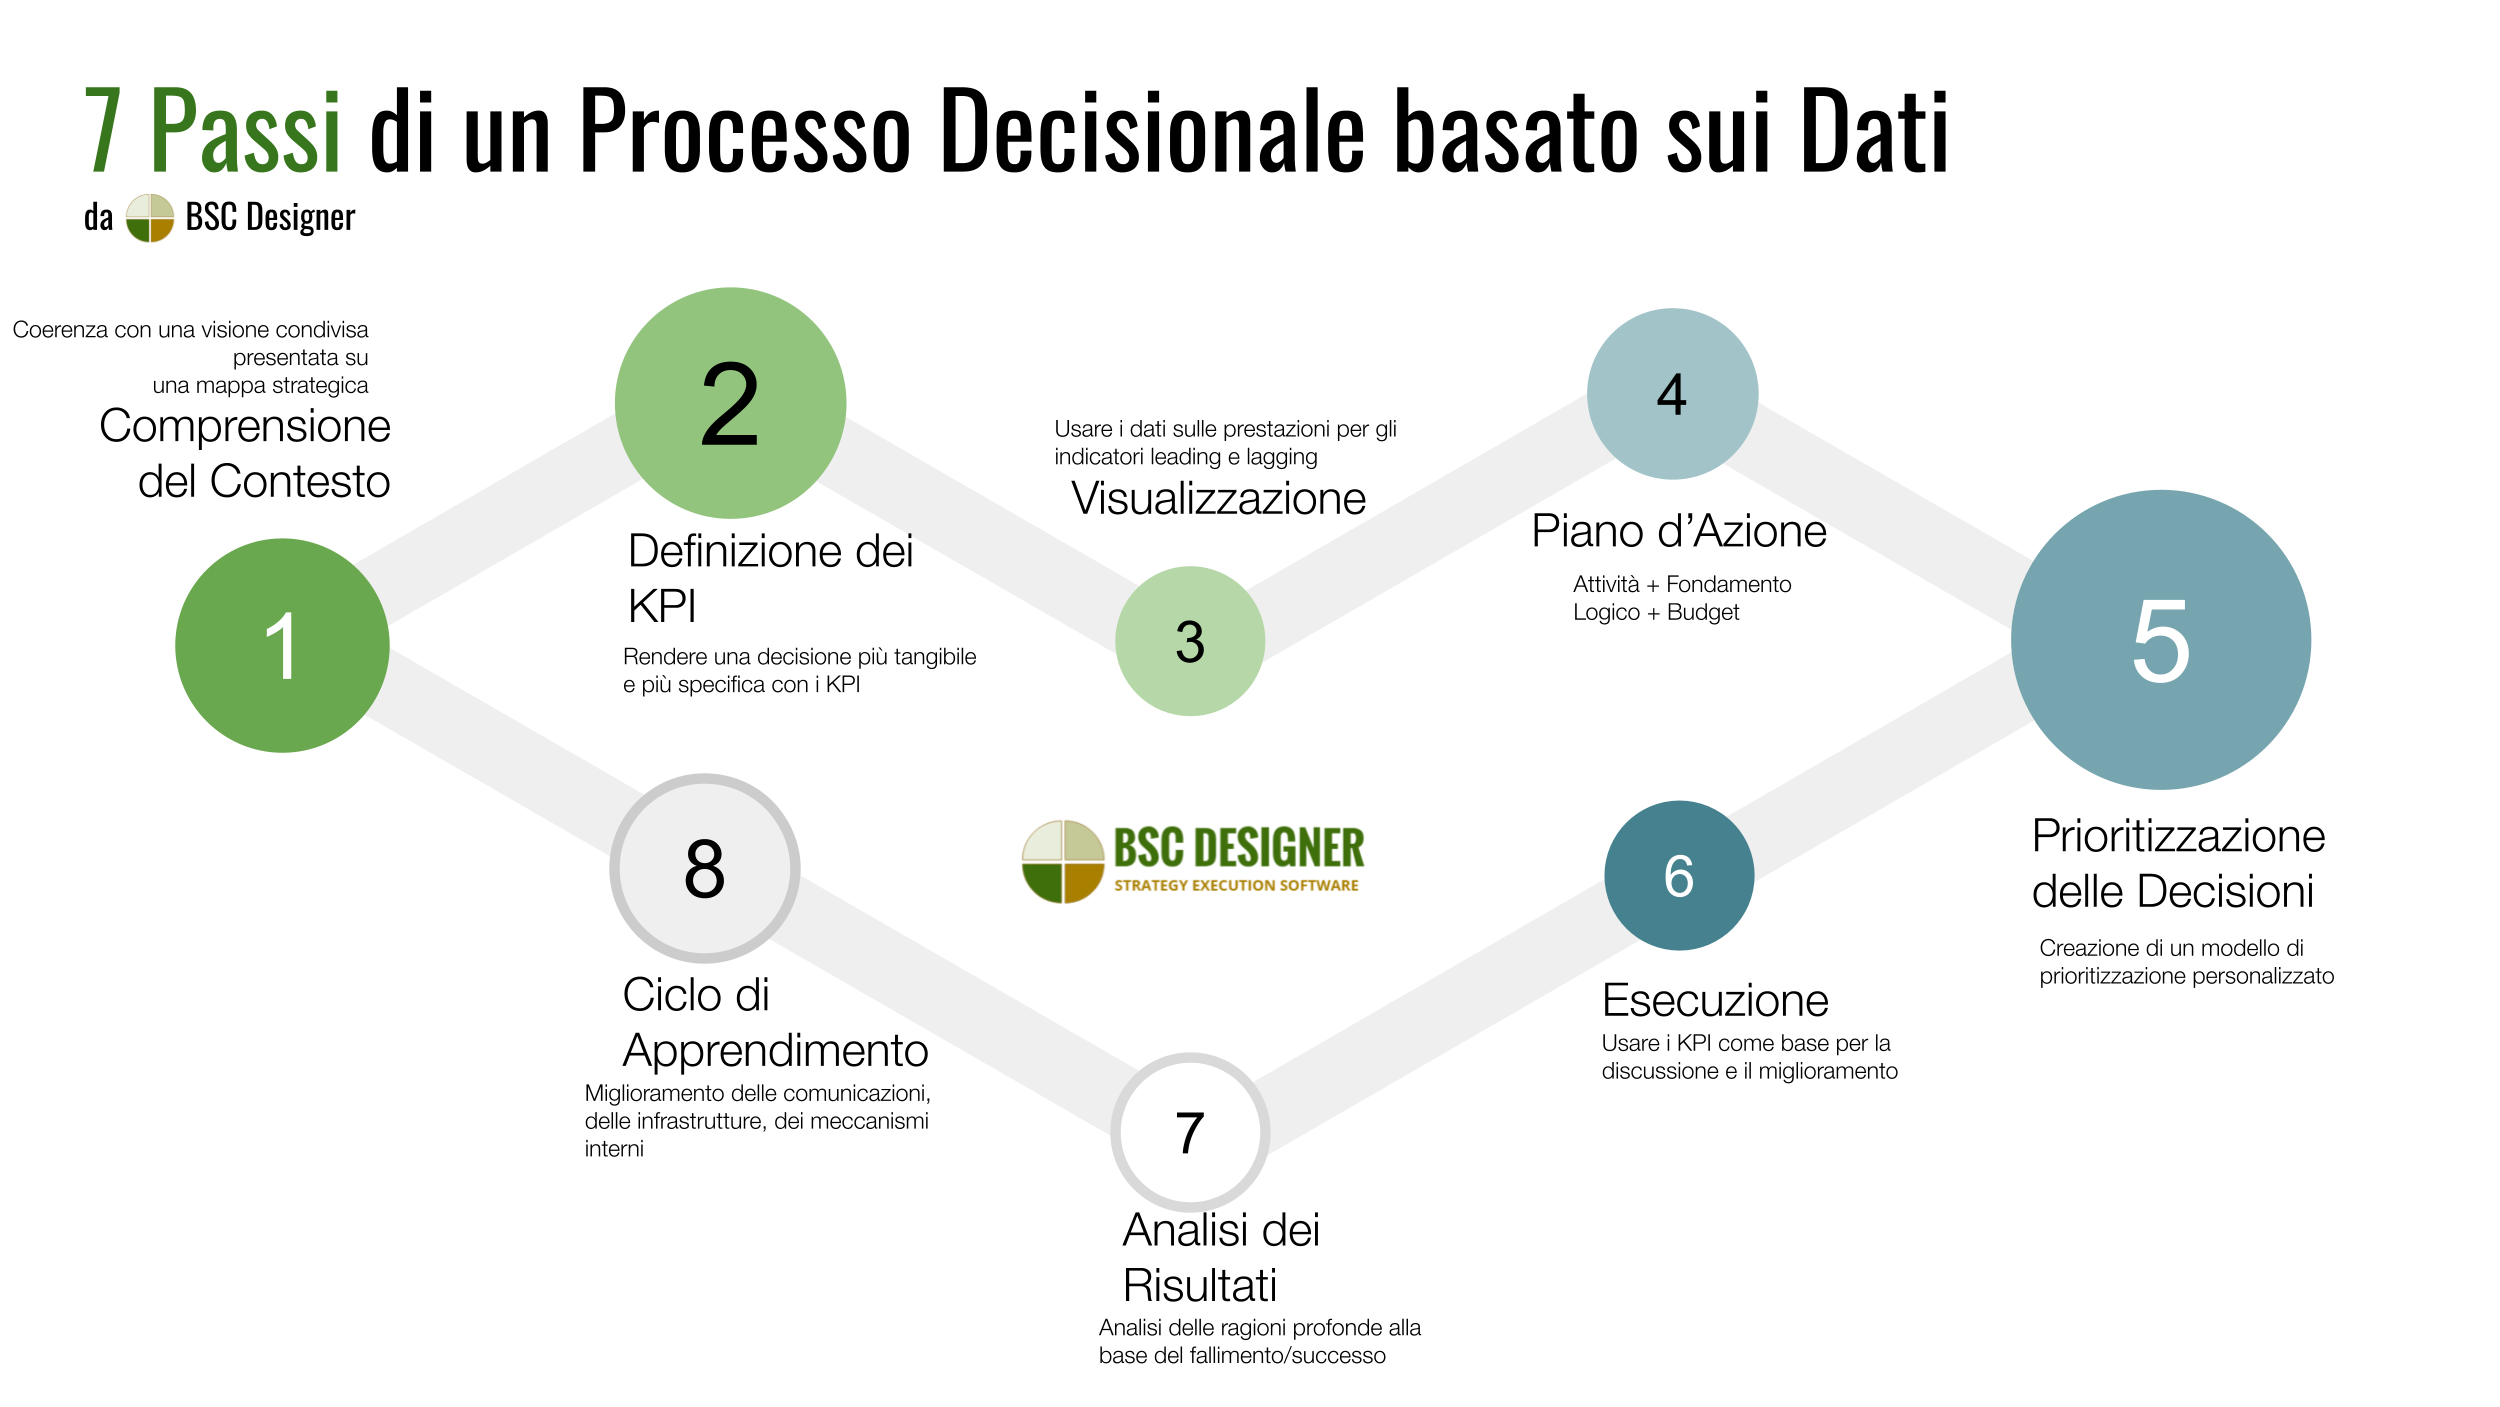 7 Passi di un Processo Decisionale basato sui dati